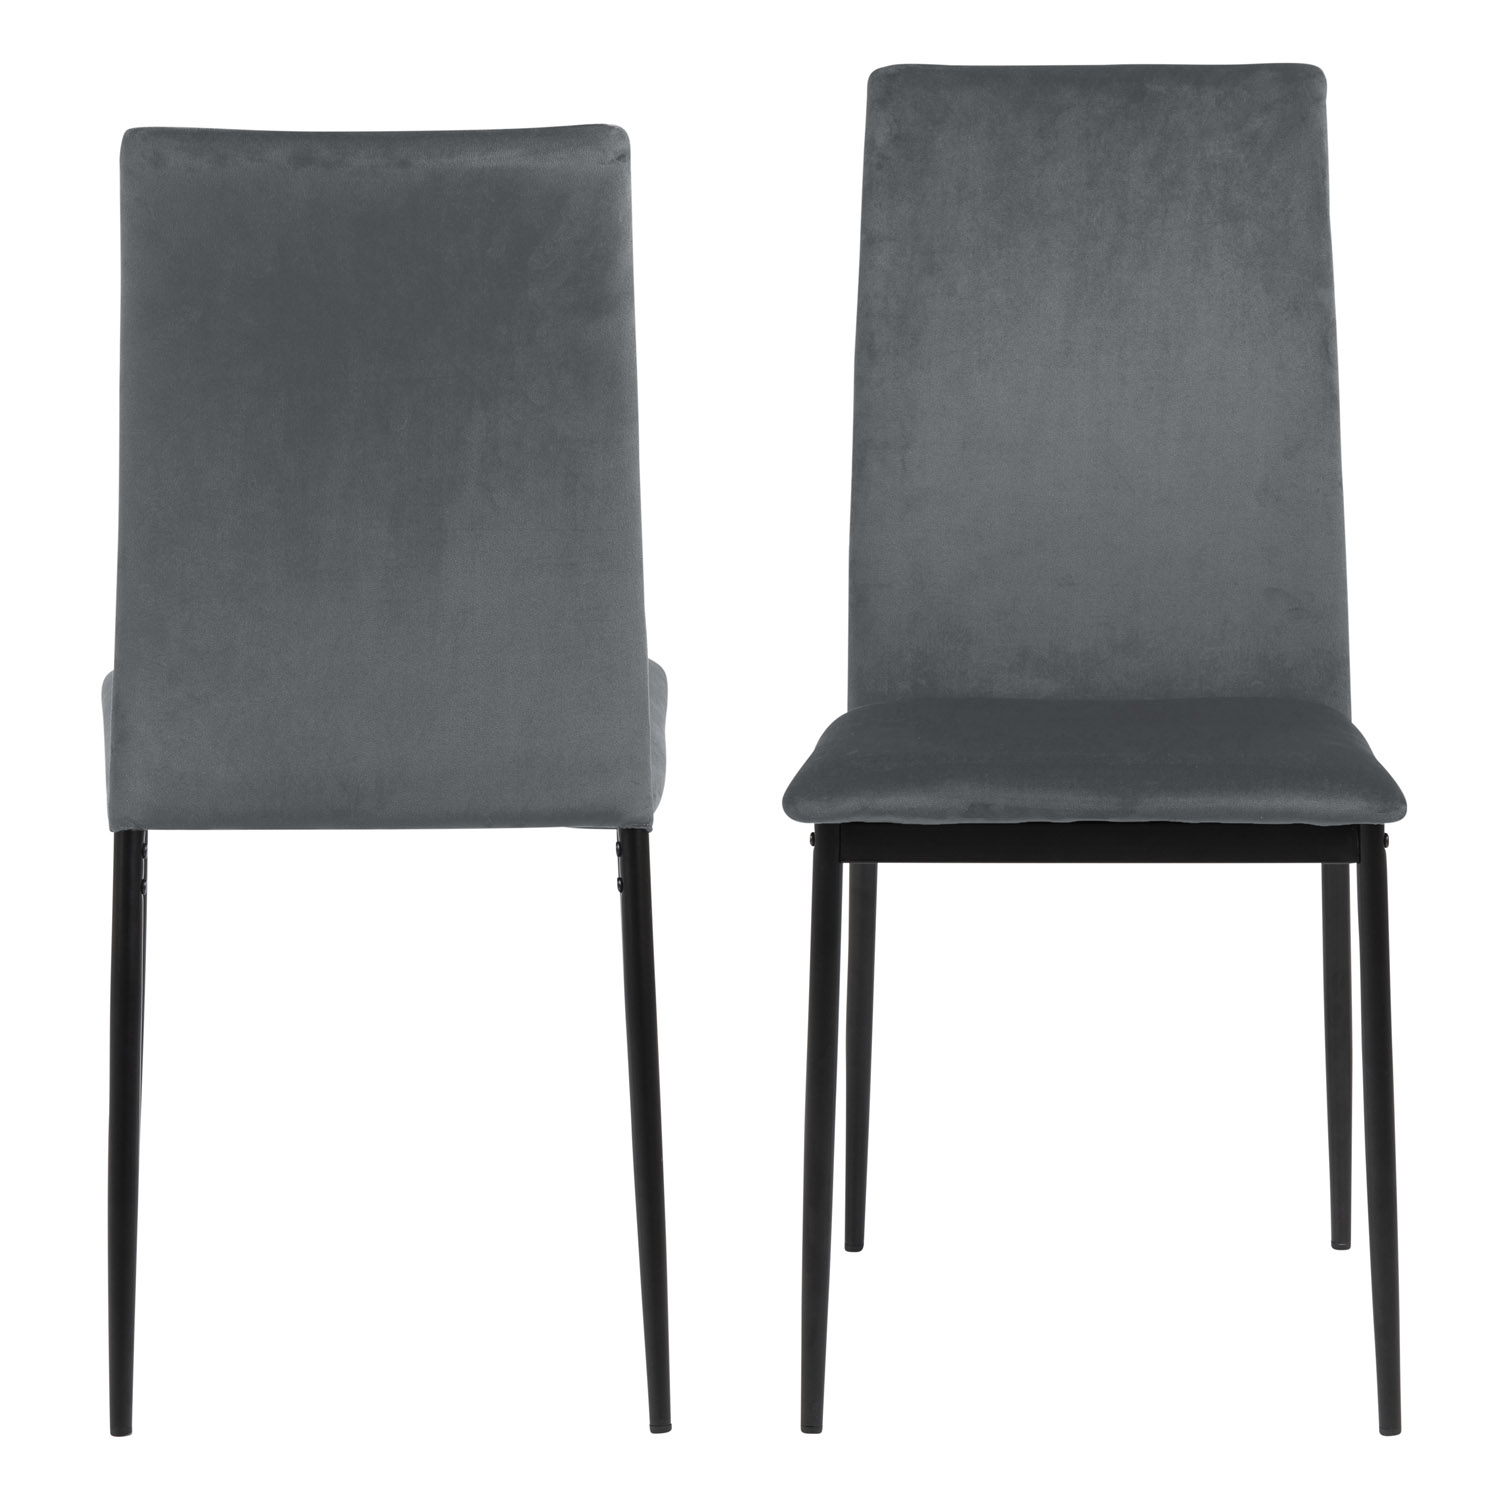 Billede af ACT NORDIC Demina spisebordsstol - mørkegrå polyester og sort metal